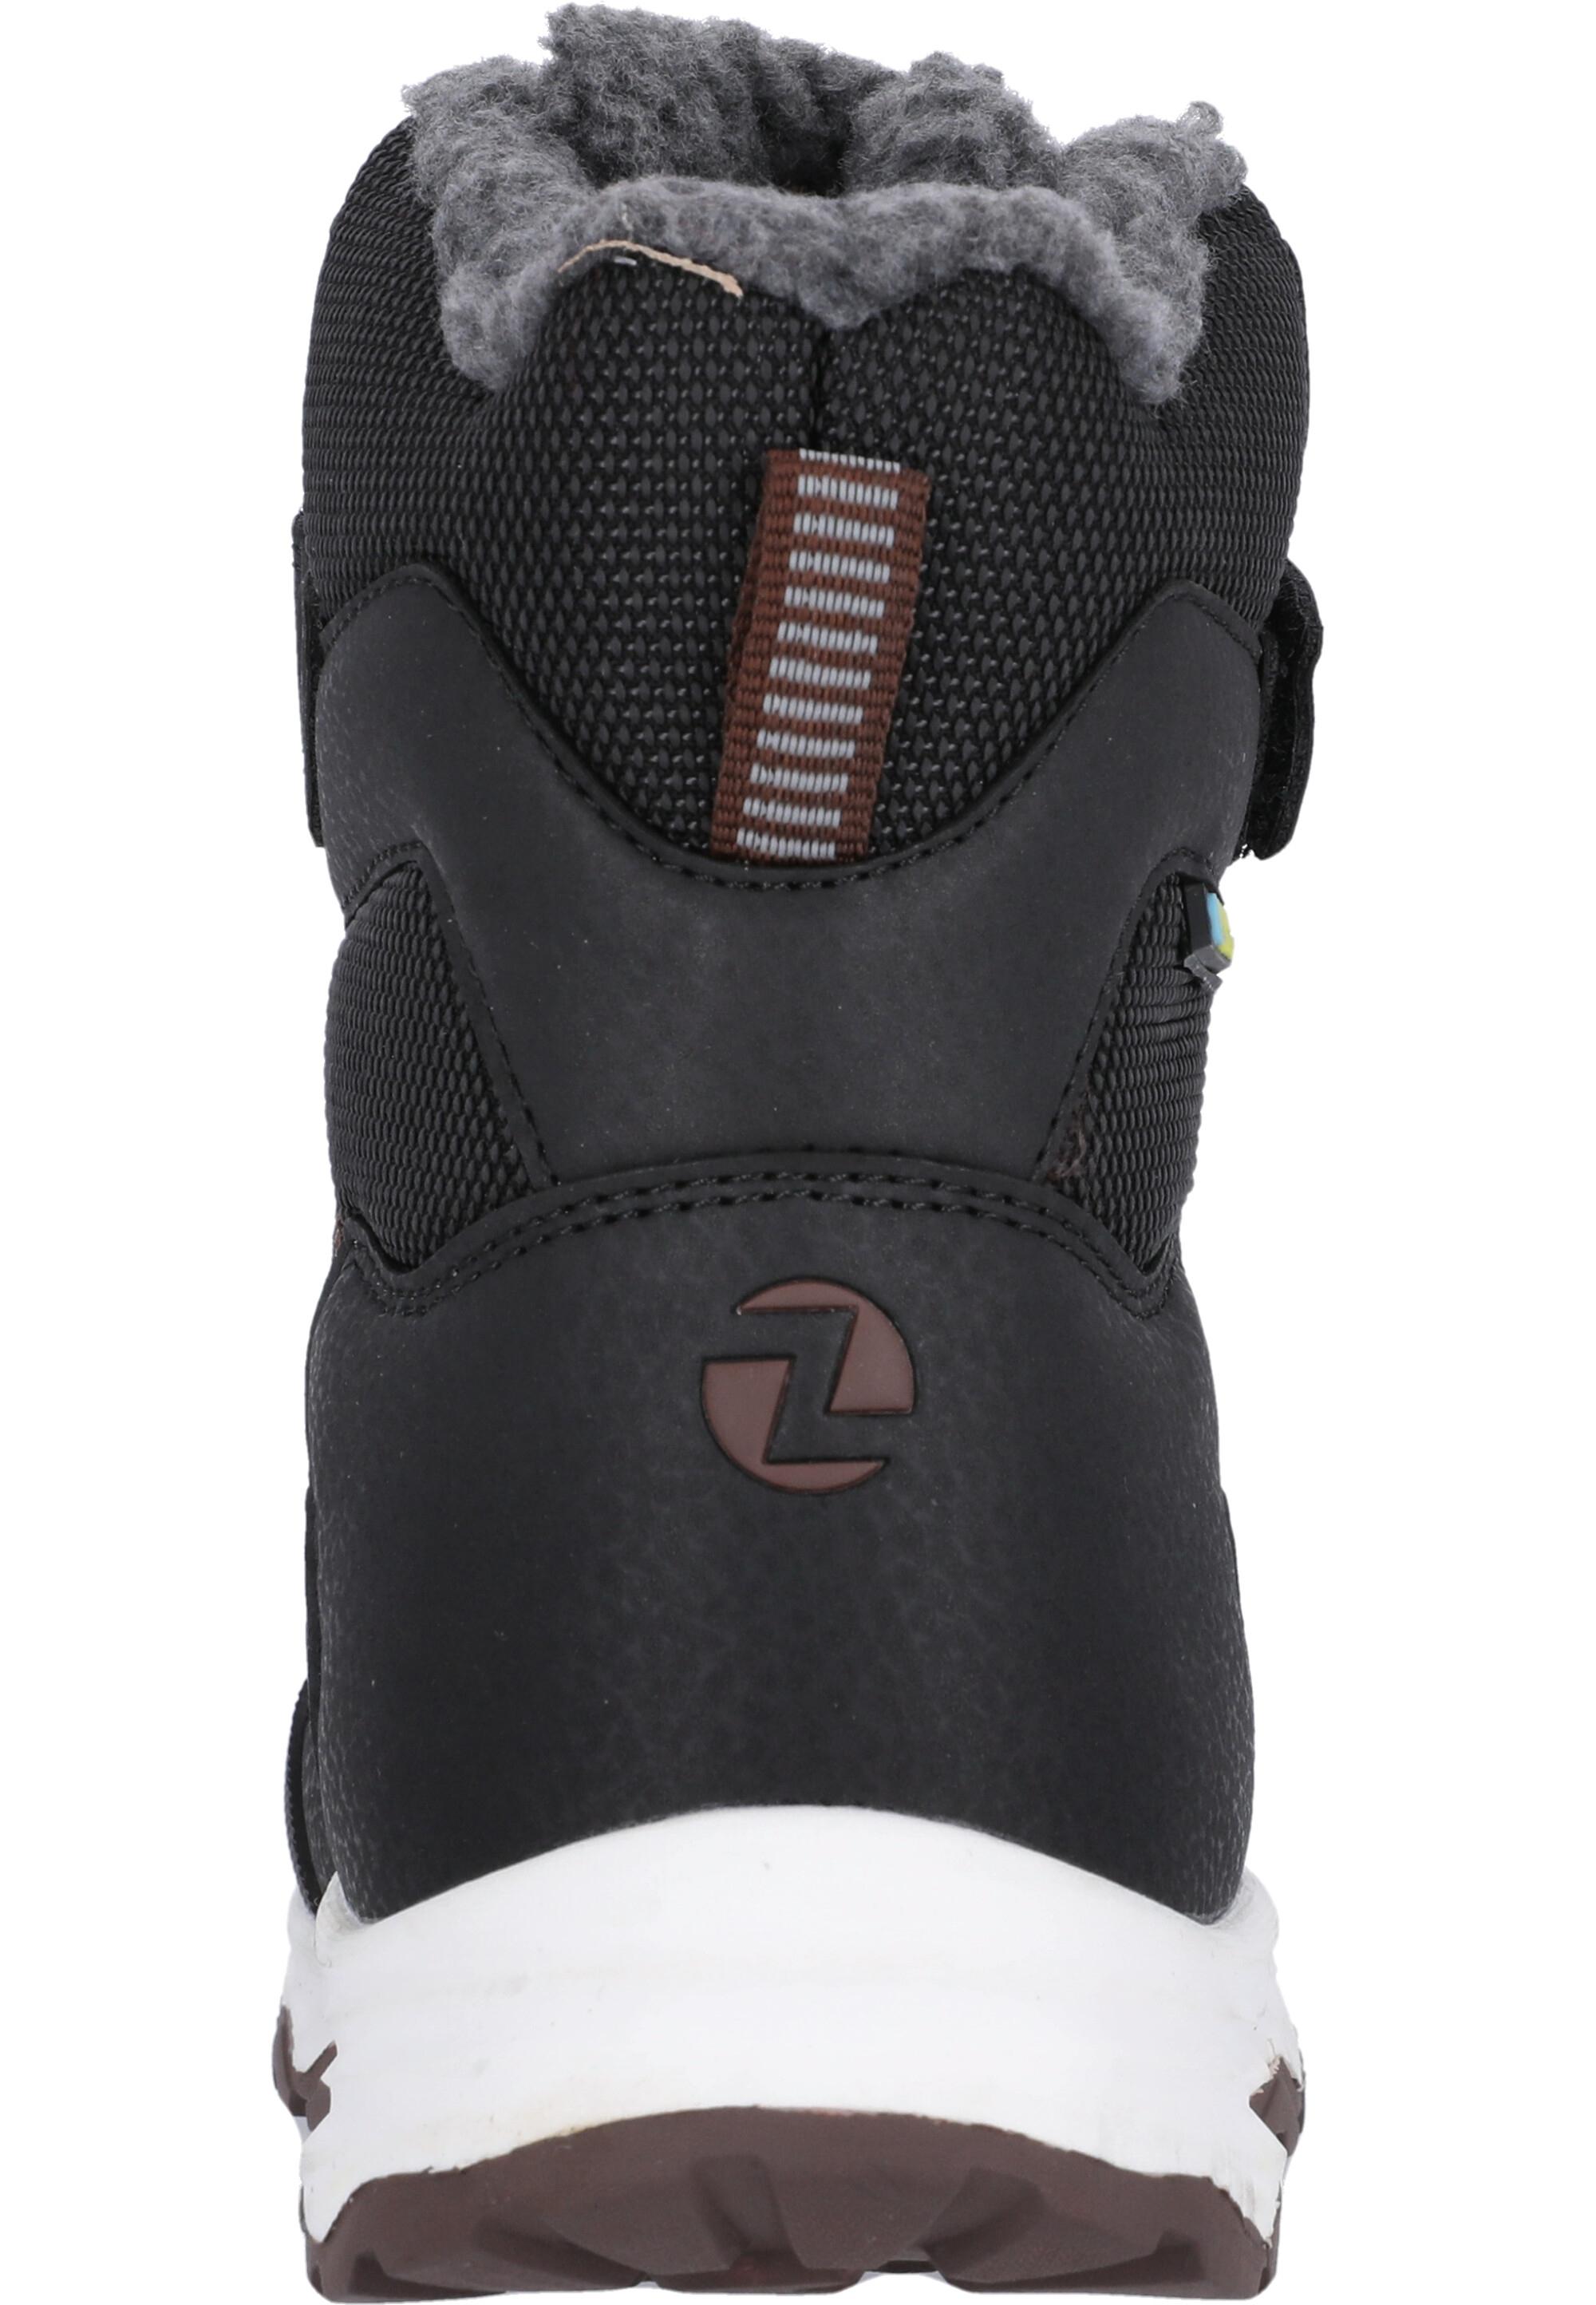 Black Shop Online 1001 SportScheck kaufen ZigZag Stiefel Balful im Kinder von